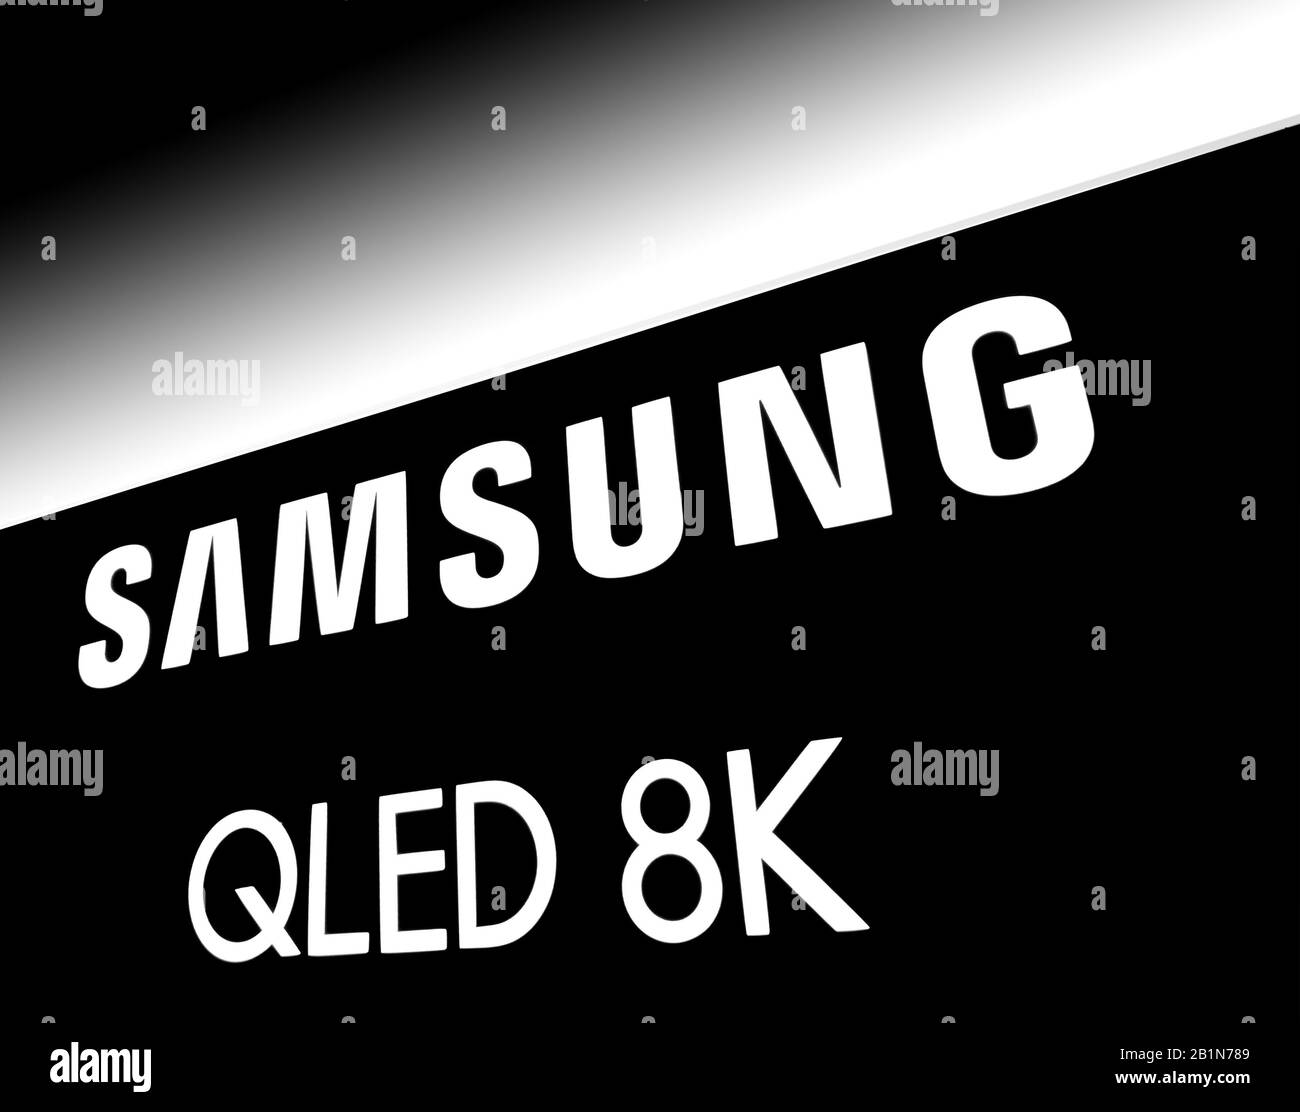 Samsung QLED 8k, logo contrastato da Expo Foto Stock